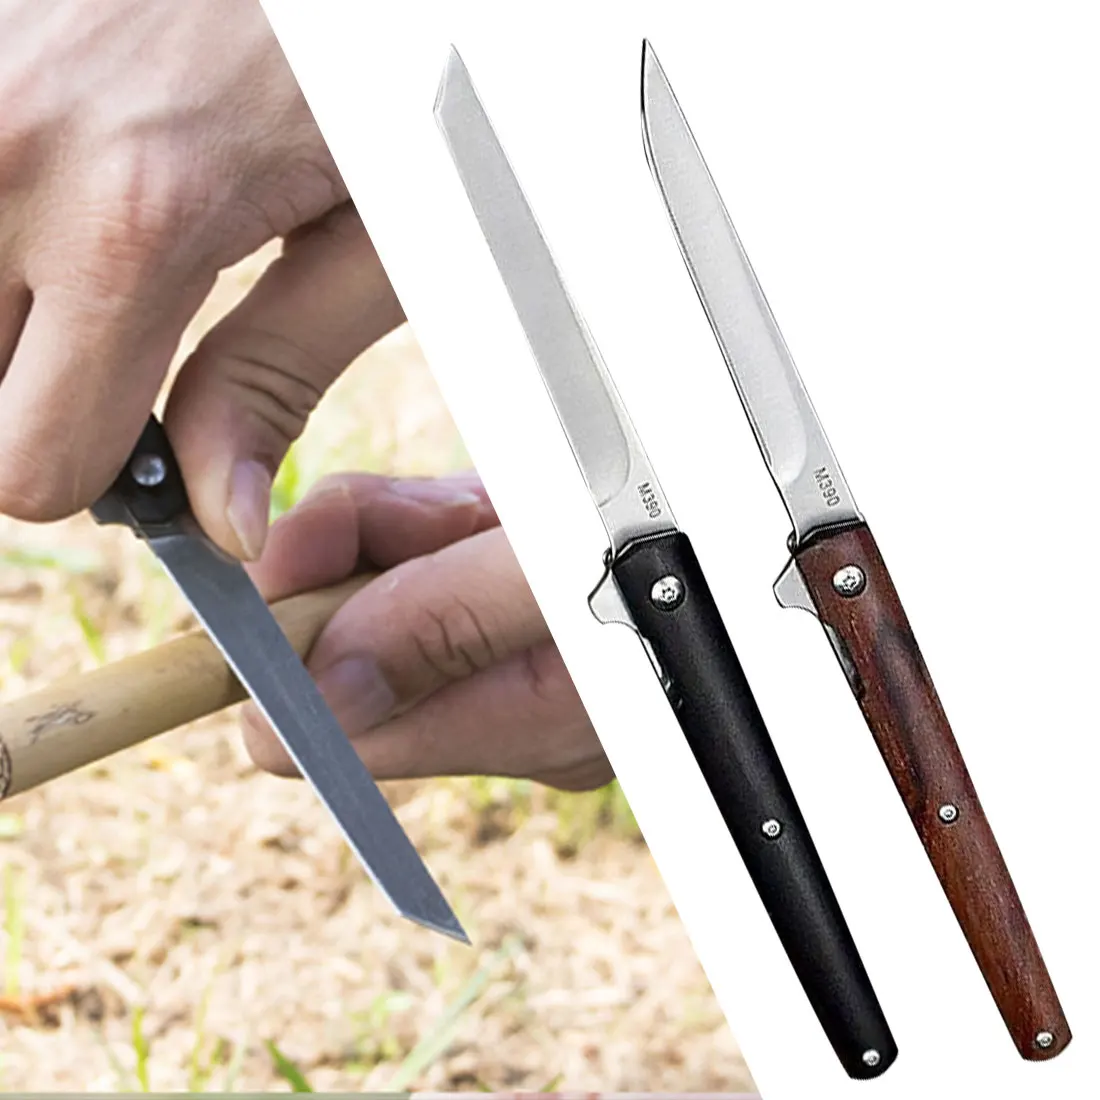 Cuchillo de supervivencia multifunción para acampada al aire libre, cuchillo de bolsillo portátil con mango de madera y funda táctica, rescate afilado, M390